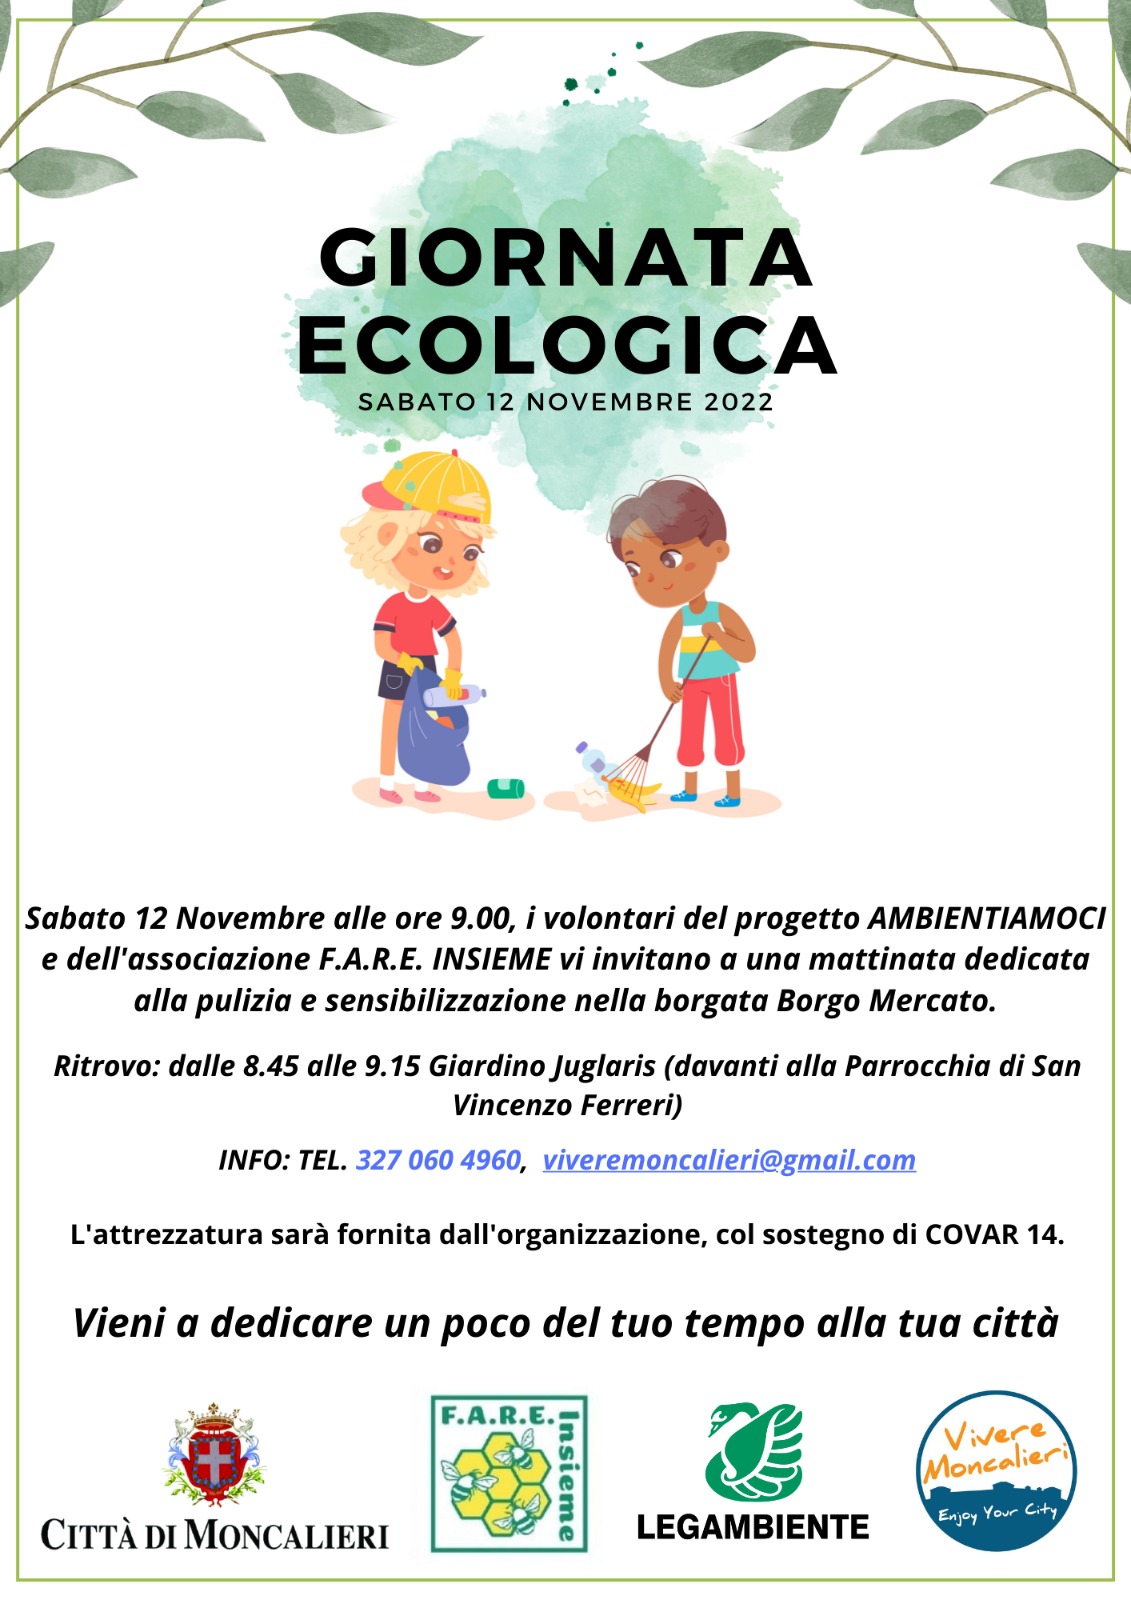 Giornata Ecologica - Sabato 12 novembre